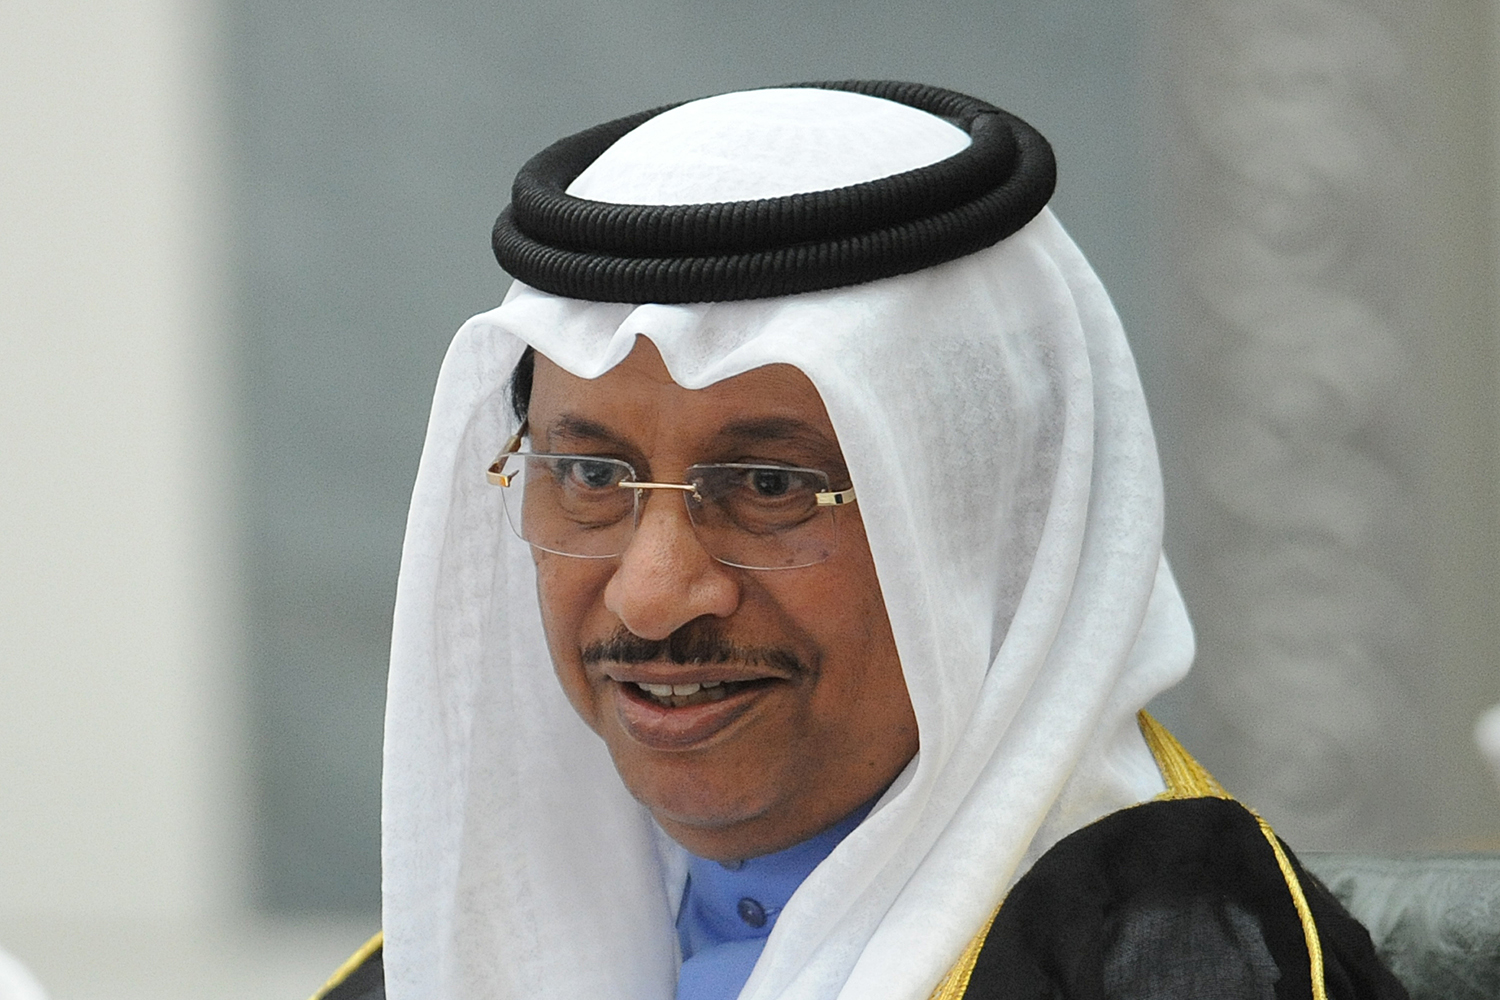 His Highness the Prime Minister Sheikh Jaber Mubarak Al-Hamad Al-Sabah